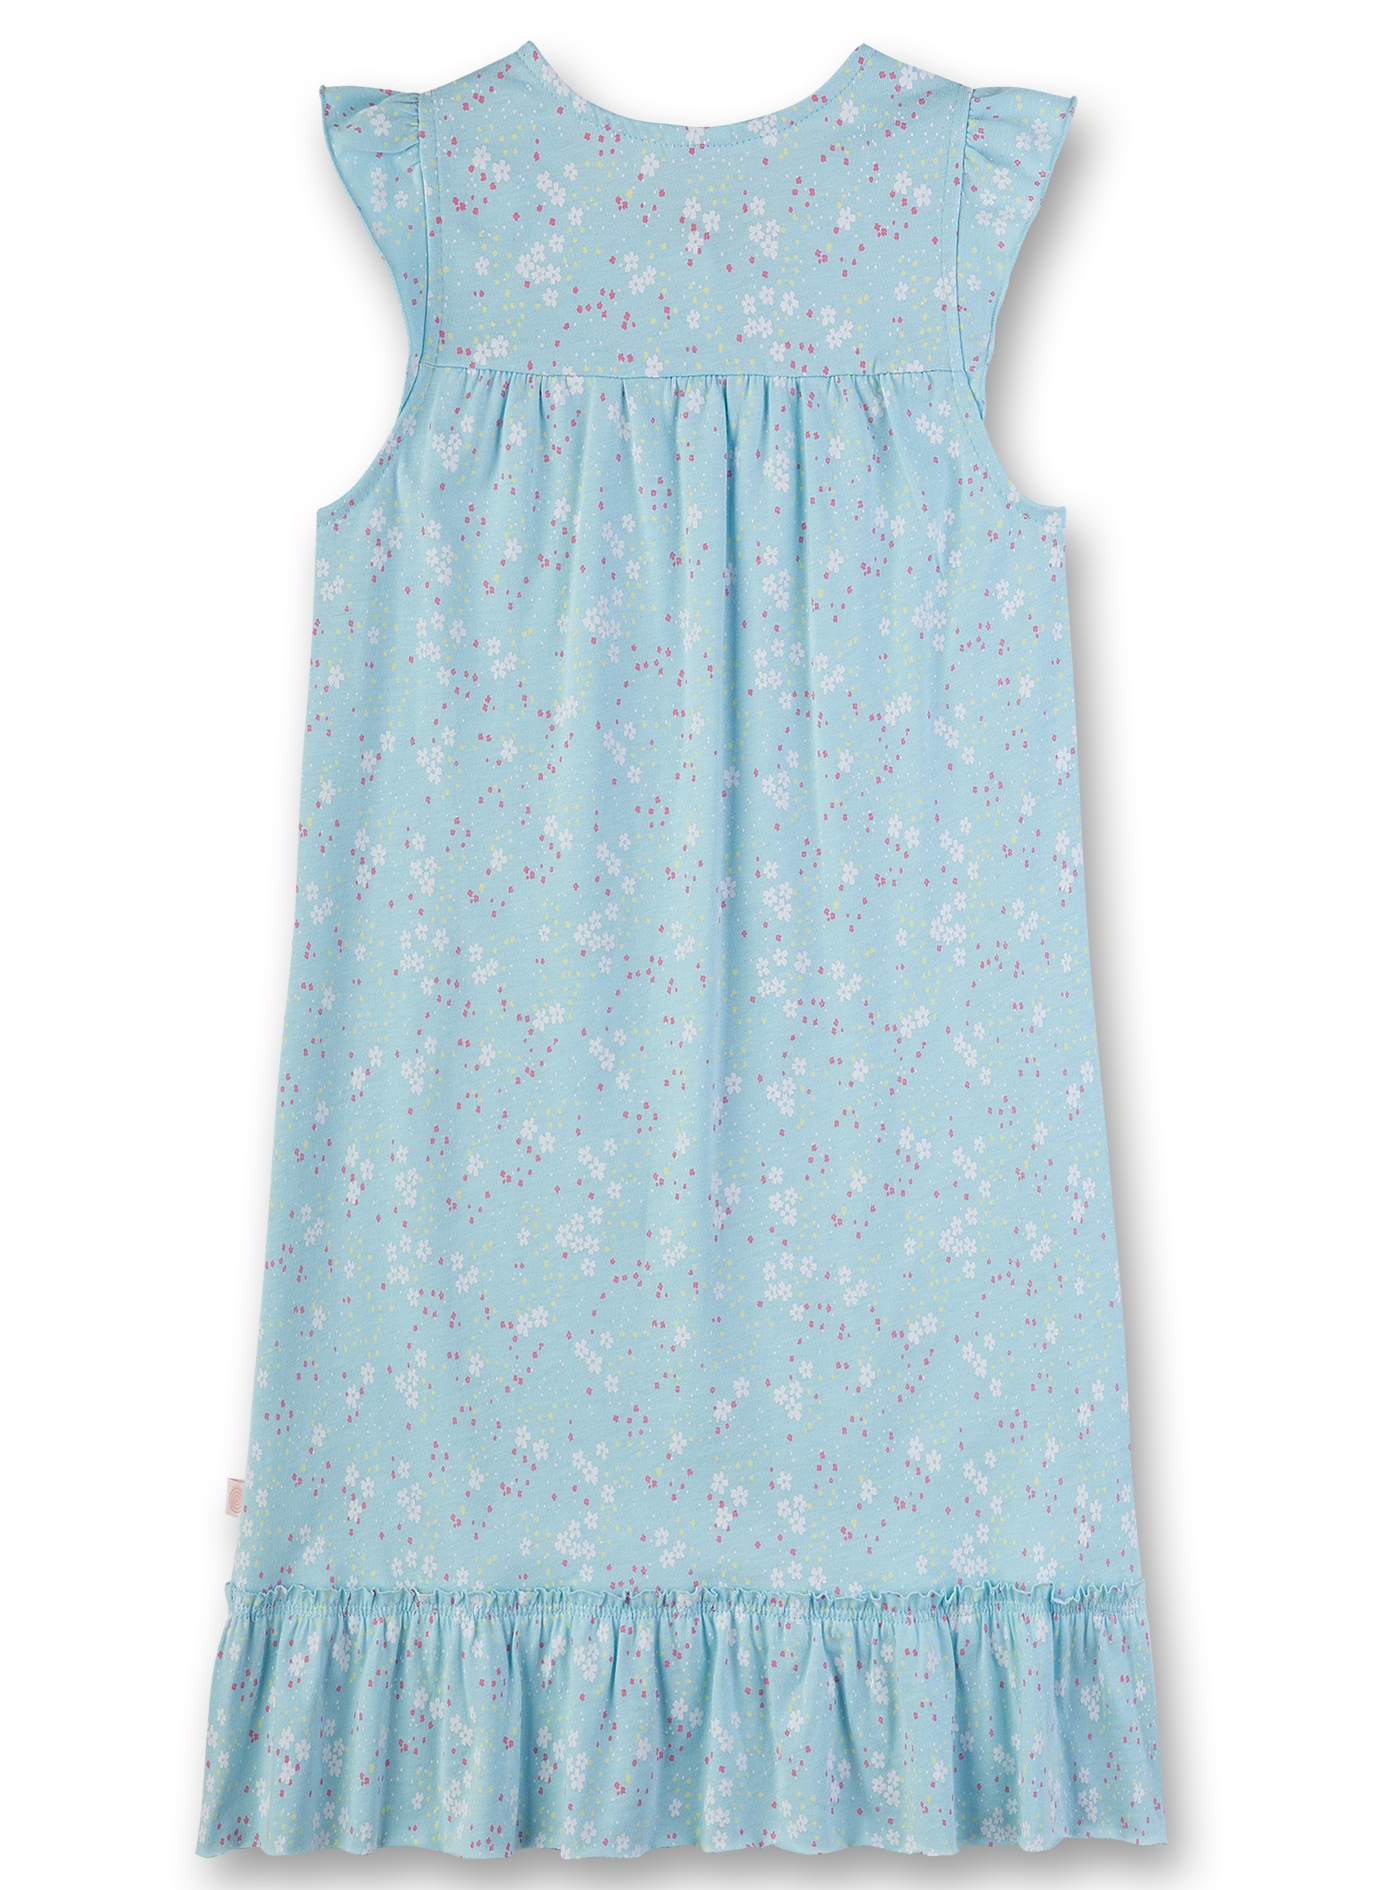 Mädchen-Nachthemd Hellblau Flowerfield